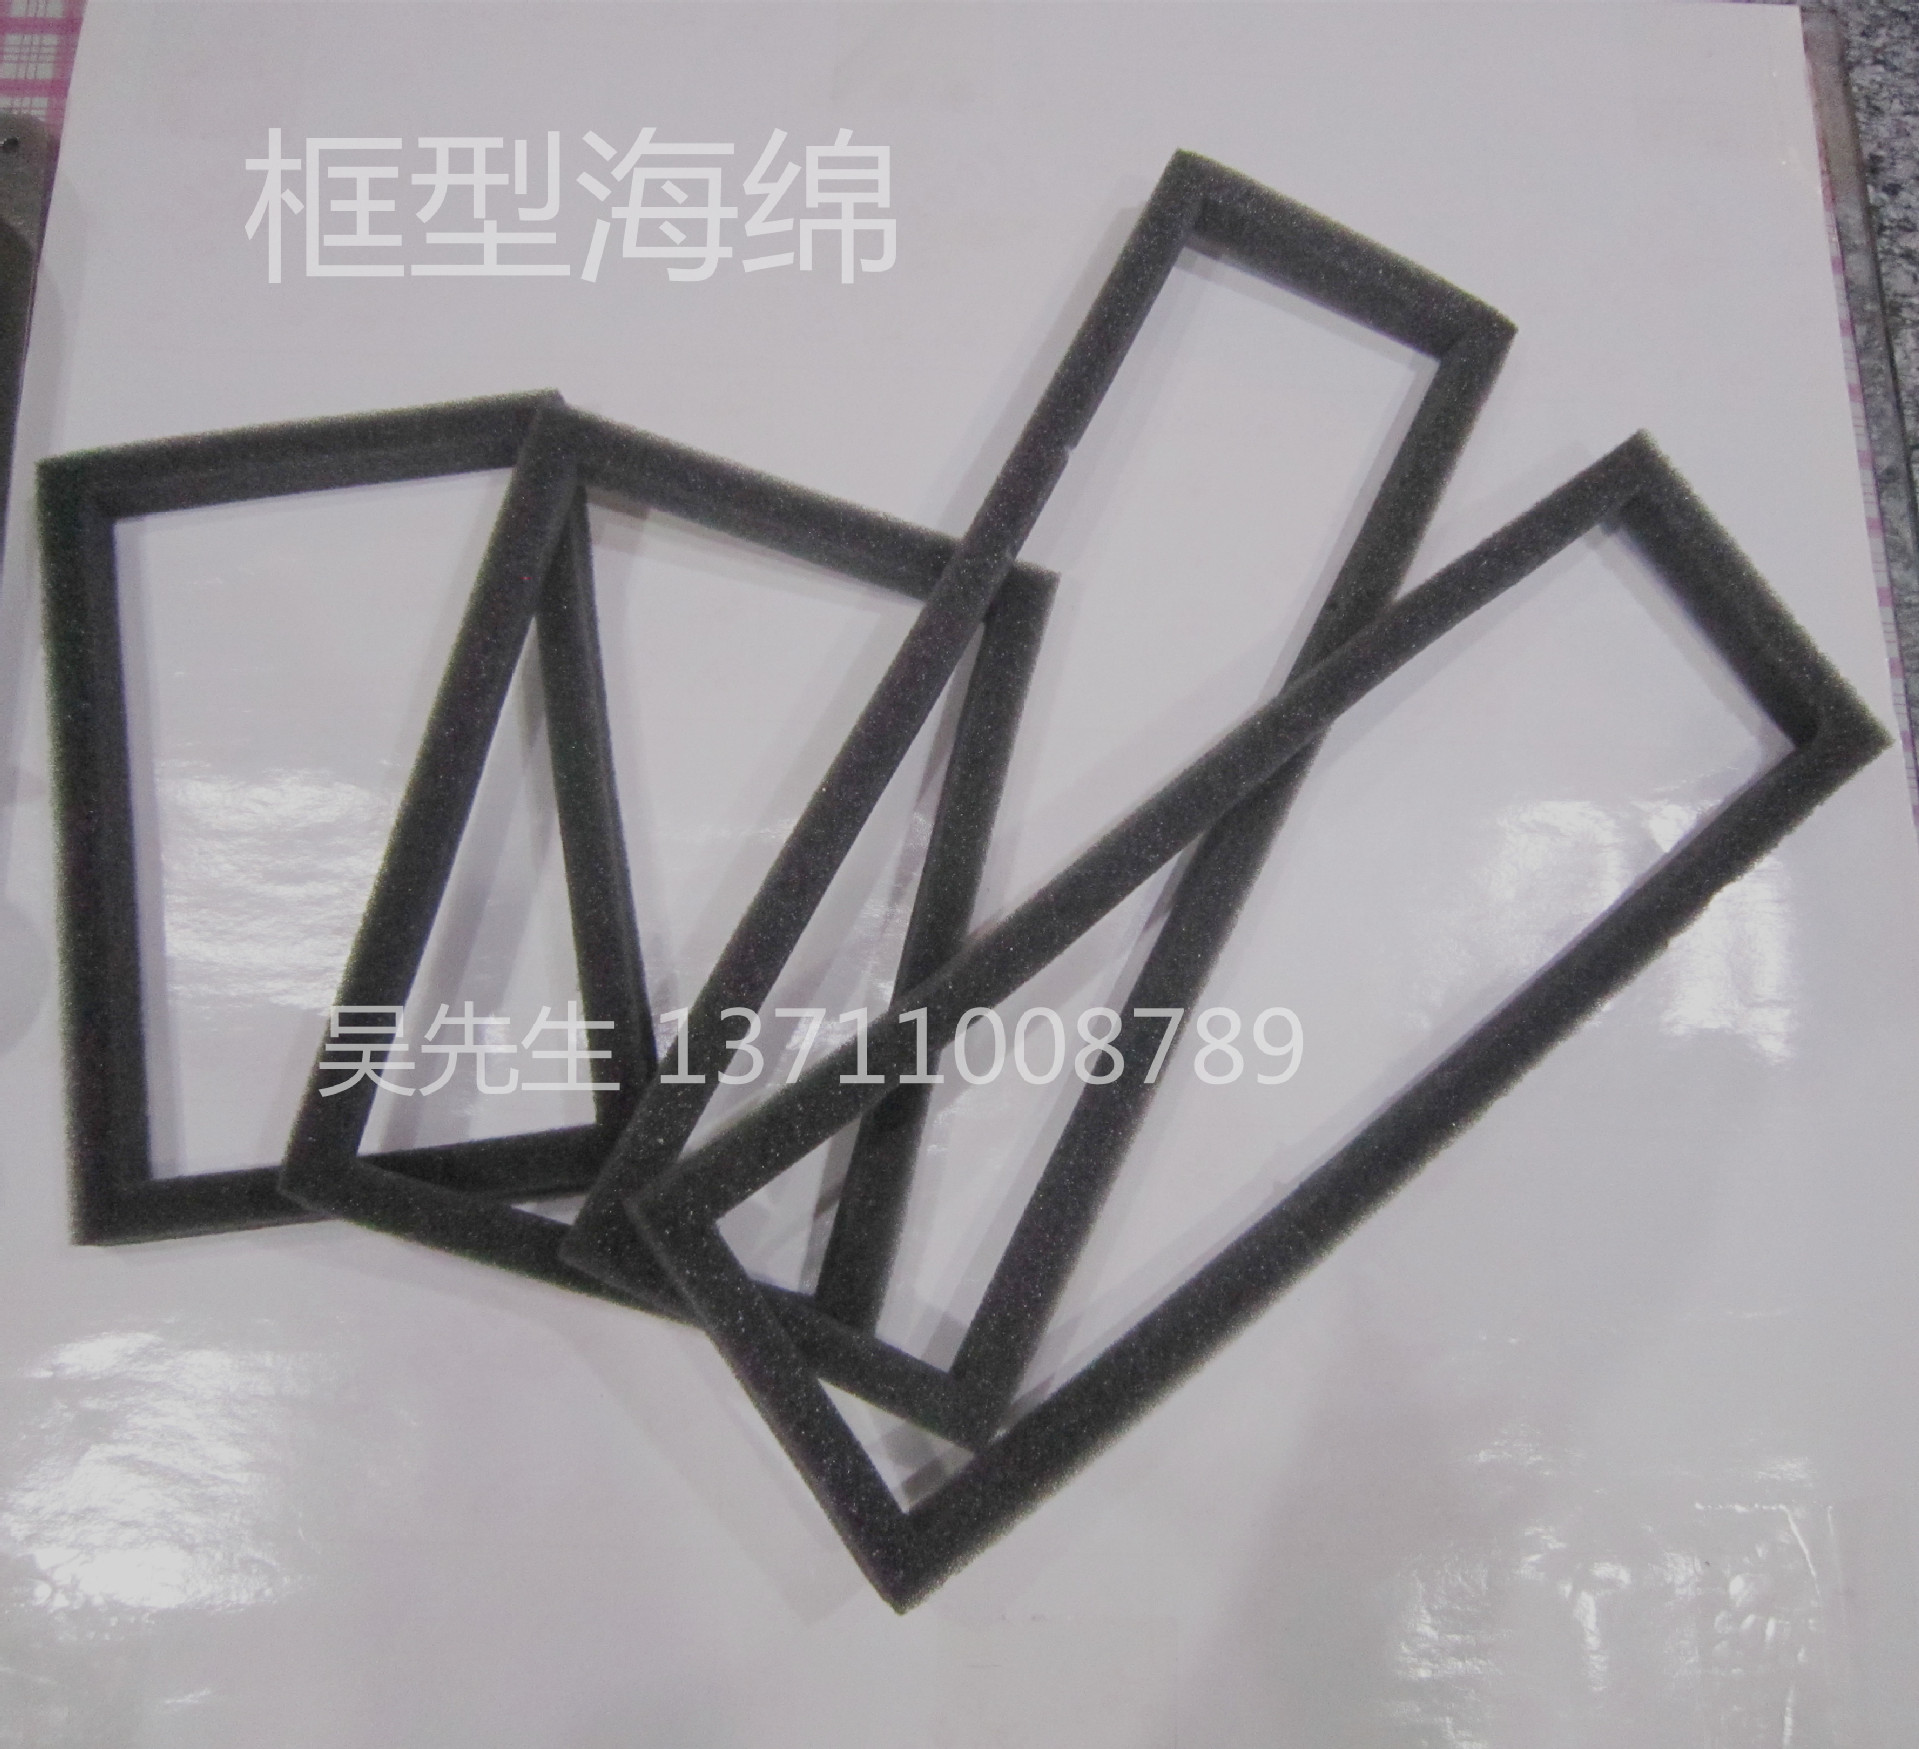 广州市定型包装海绵厂家供应定型包装海绵